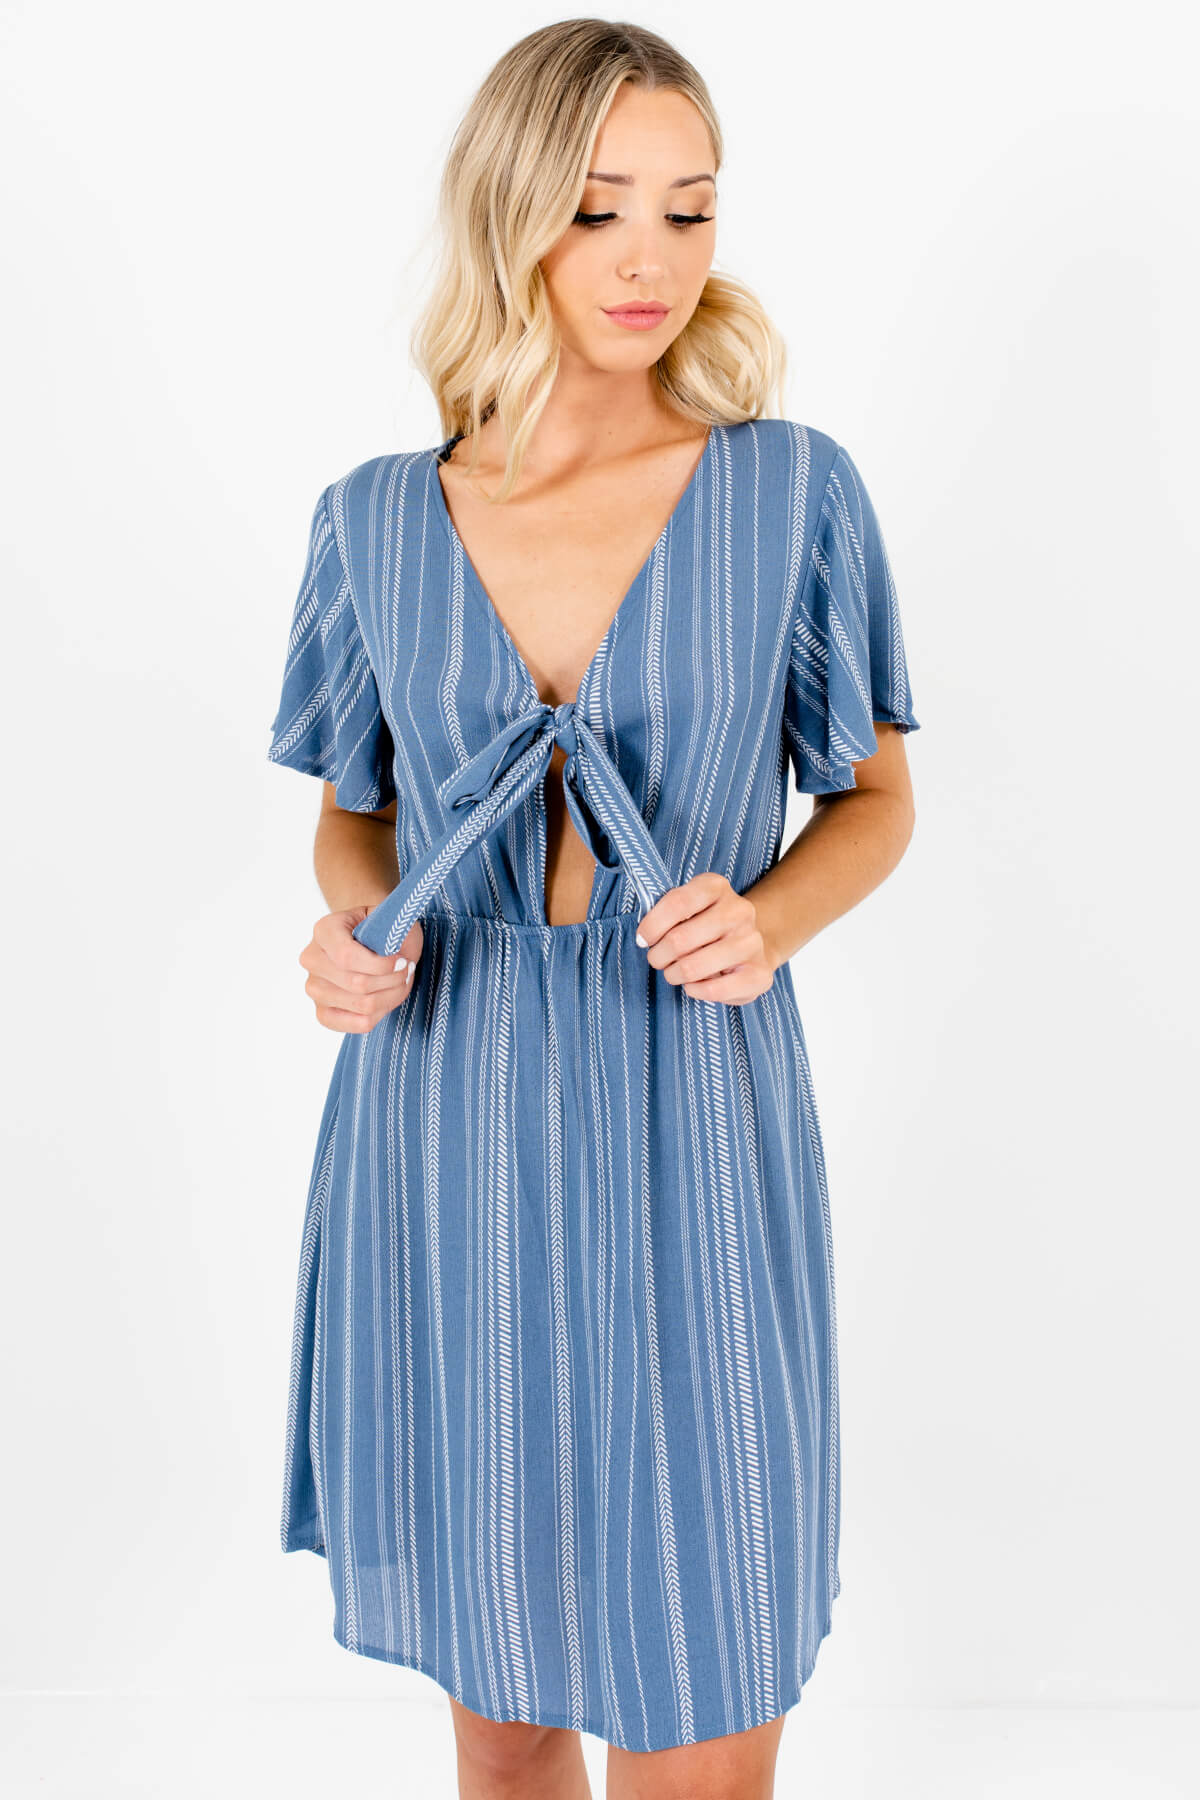 Blue Geometric Stripe Pattern Tie-Front Mini Dresses for Women